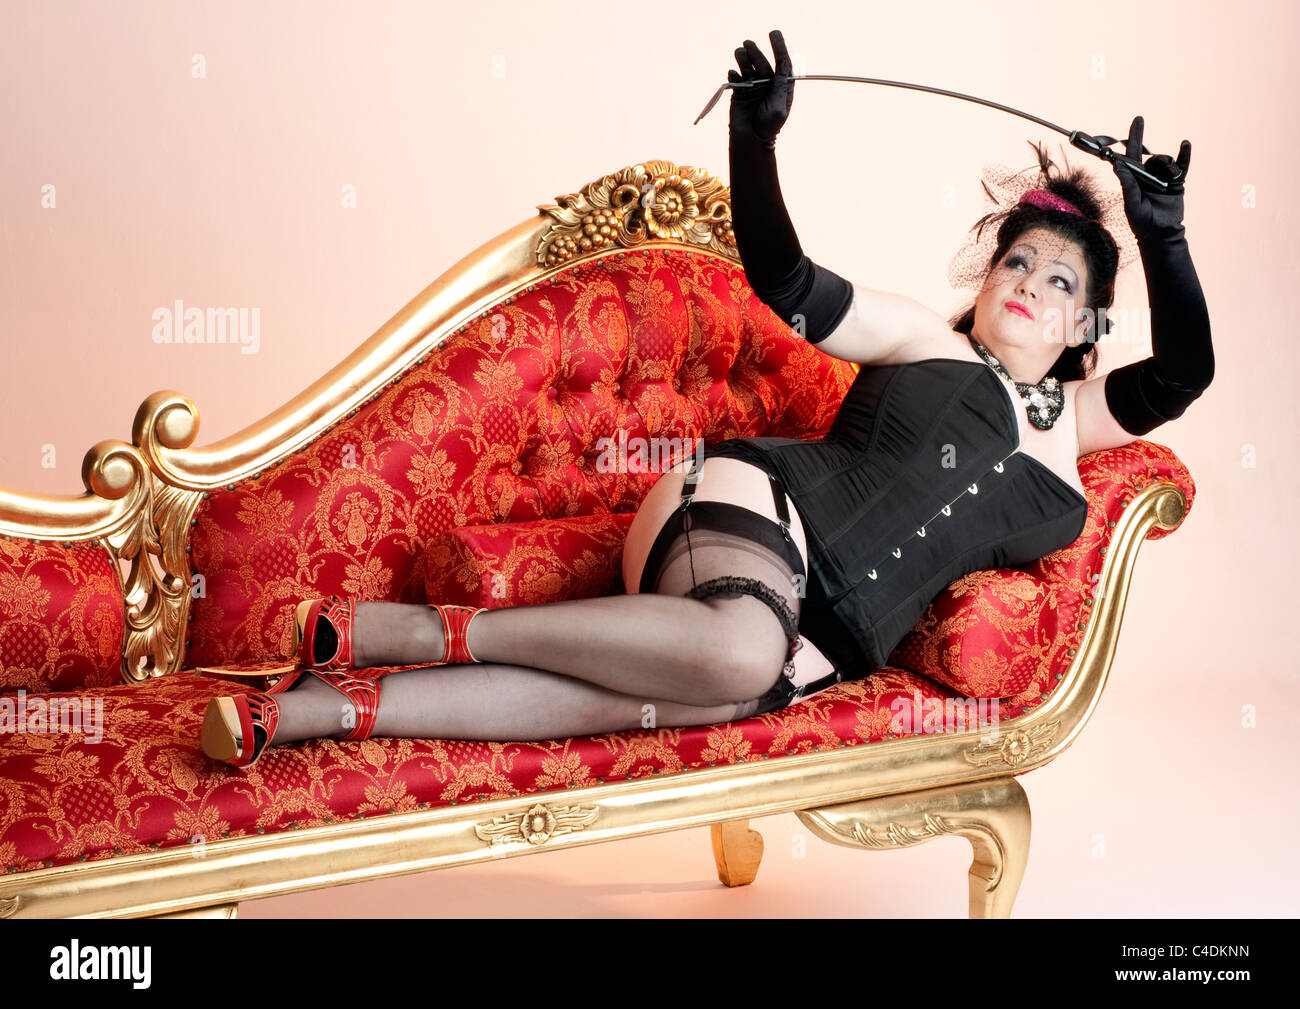 Entspannen Sie sich auf einer Chaiselongue beugen ihrer Reitgerte oder  Peitsche tragen Korsett und Seidenstrümpfe sexy Domina Stockfotografie -  Alamy